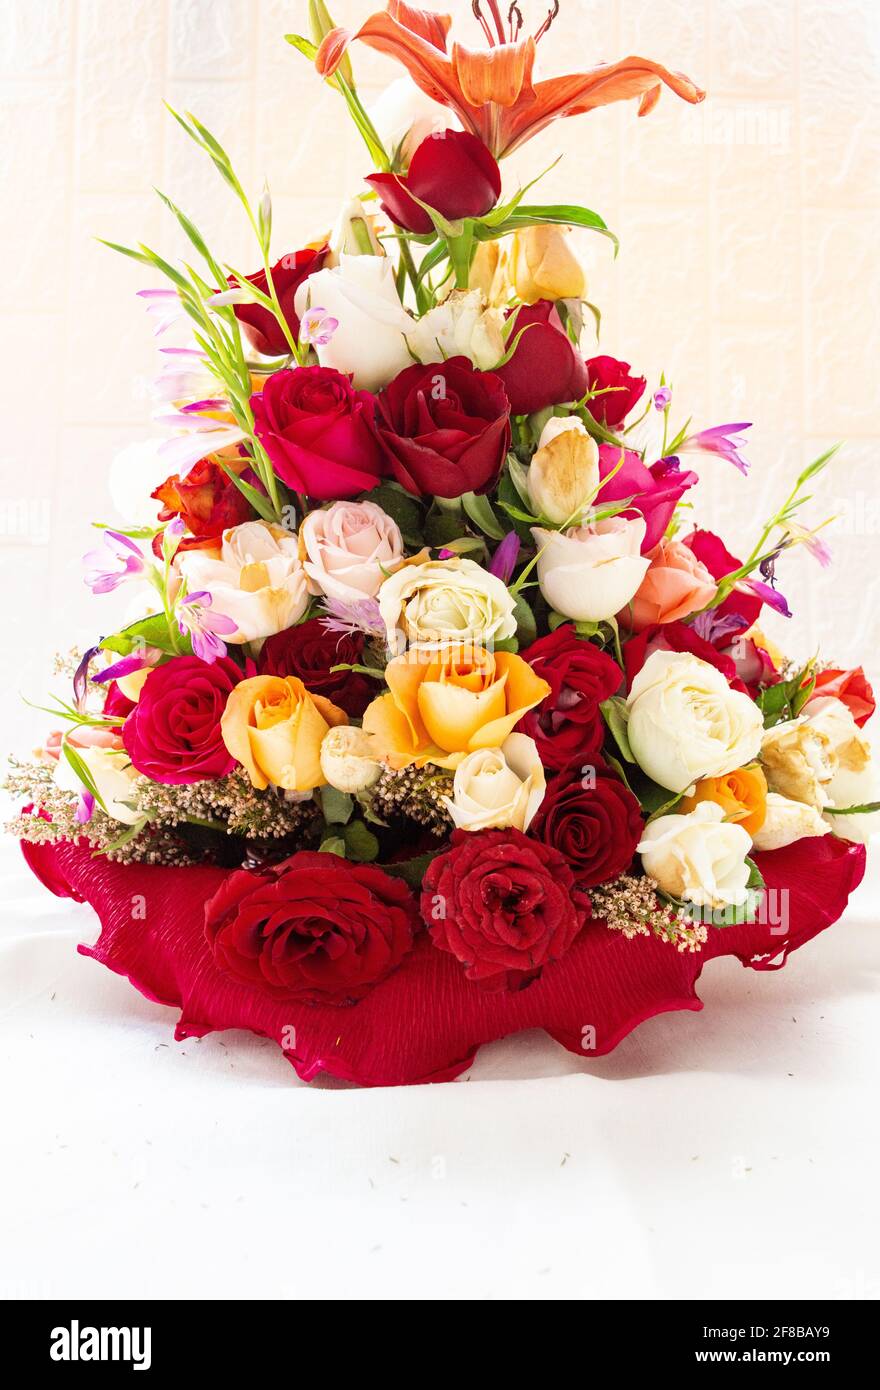 Bouquet de fleurs sur fond blanc. Un grand bouquet de fleurs et de roses.  La composition d'un fleuriste professionnel Photo Stock - Alamy